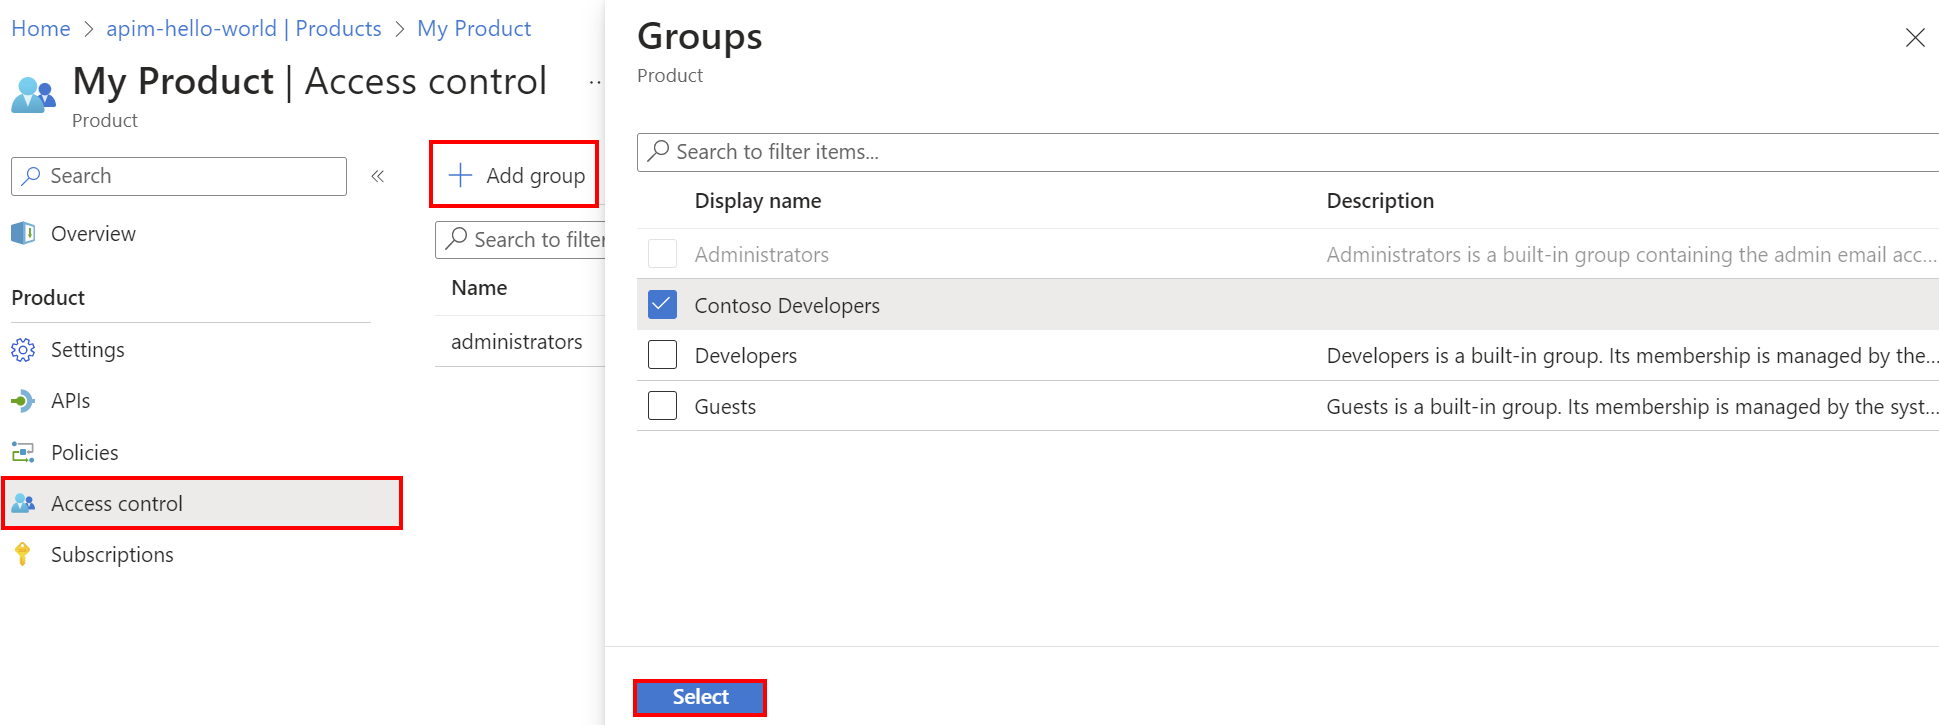 Képernyőkép egy csoport hozzáadásáról egy termékhez a portálon.